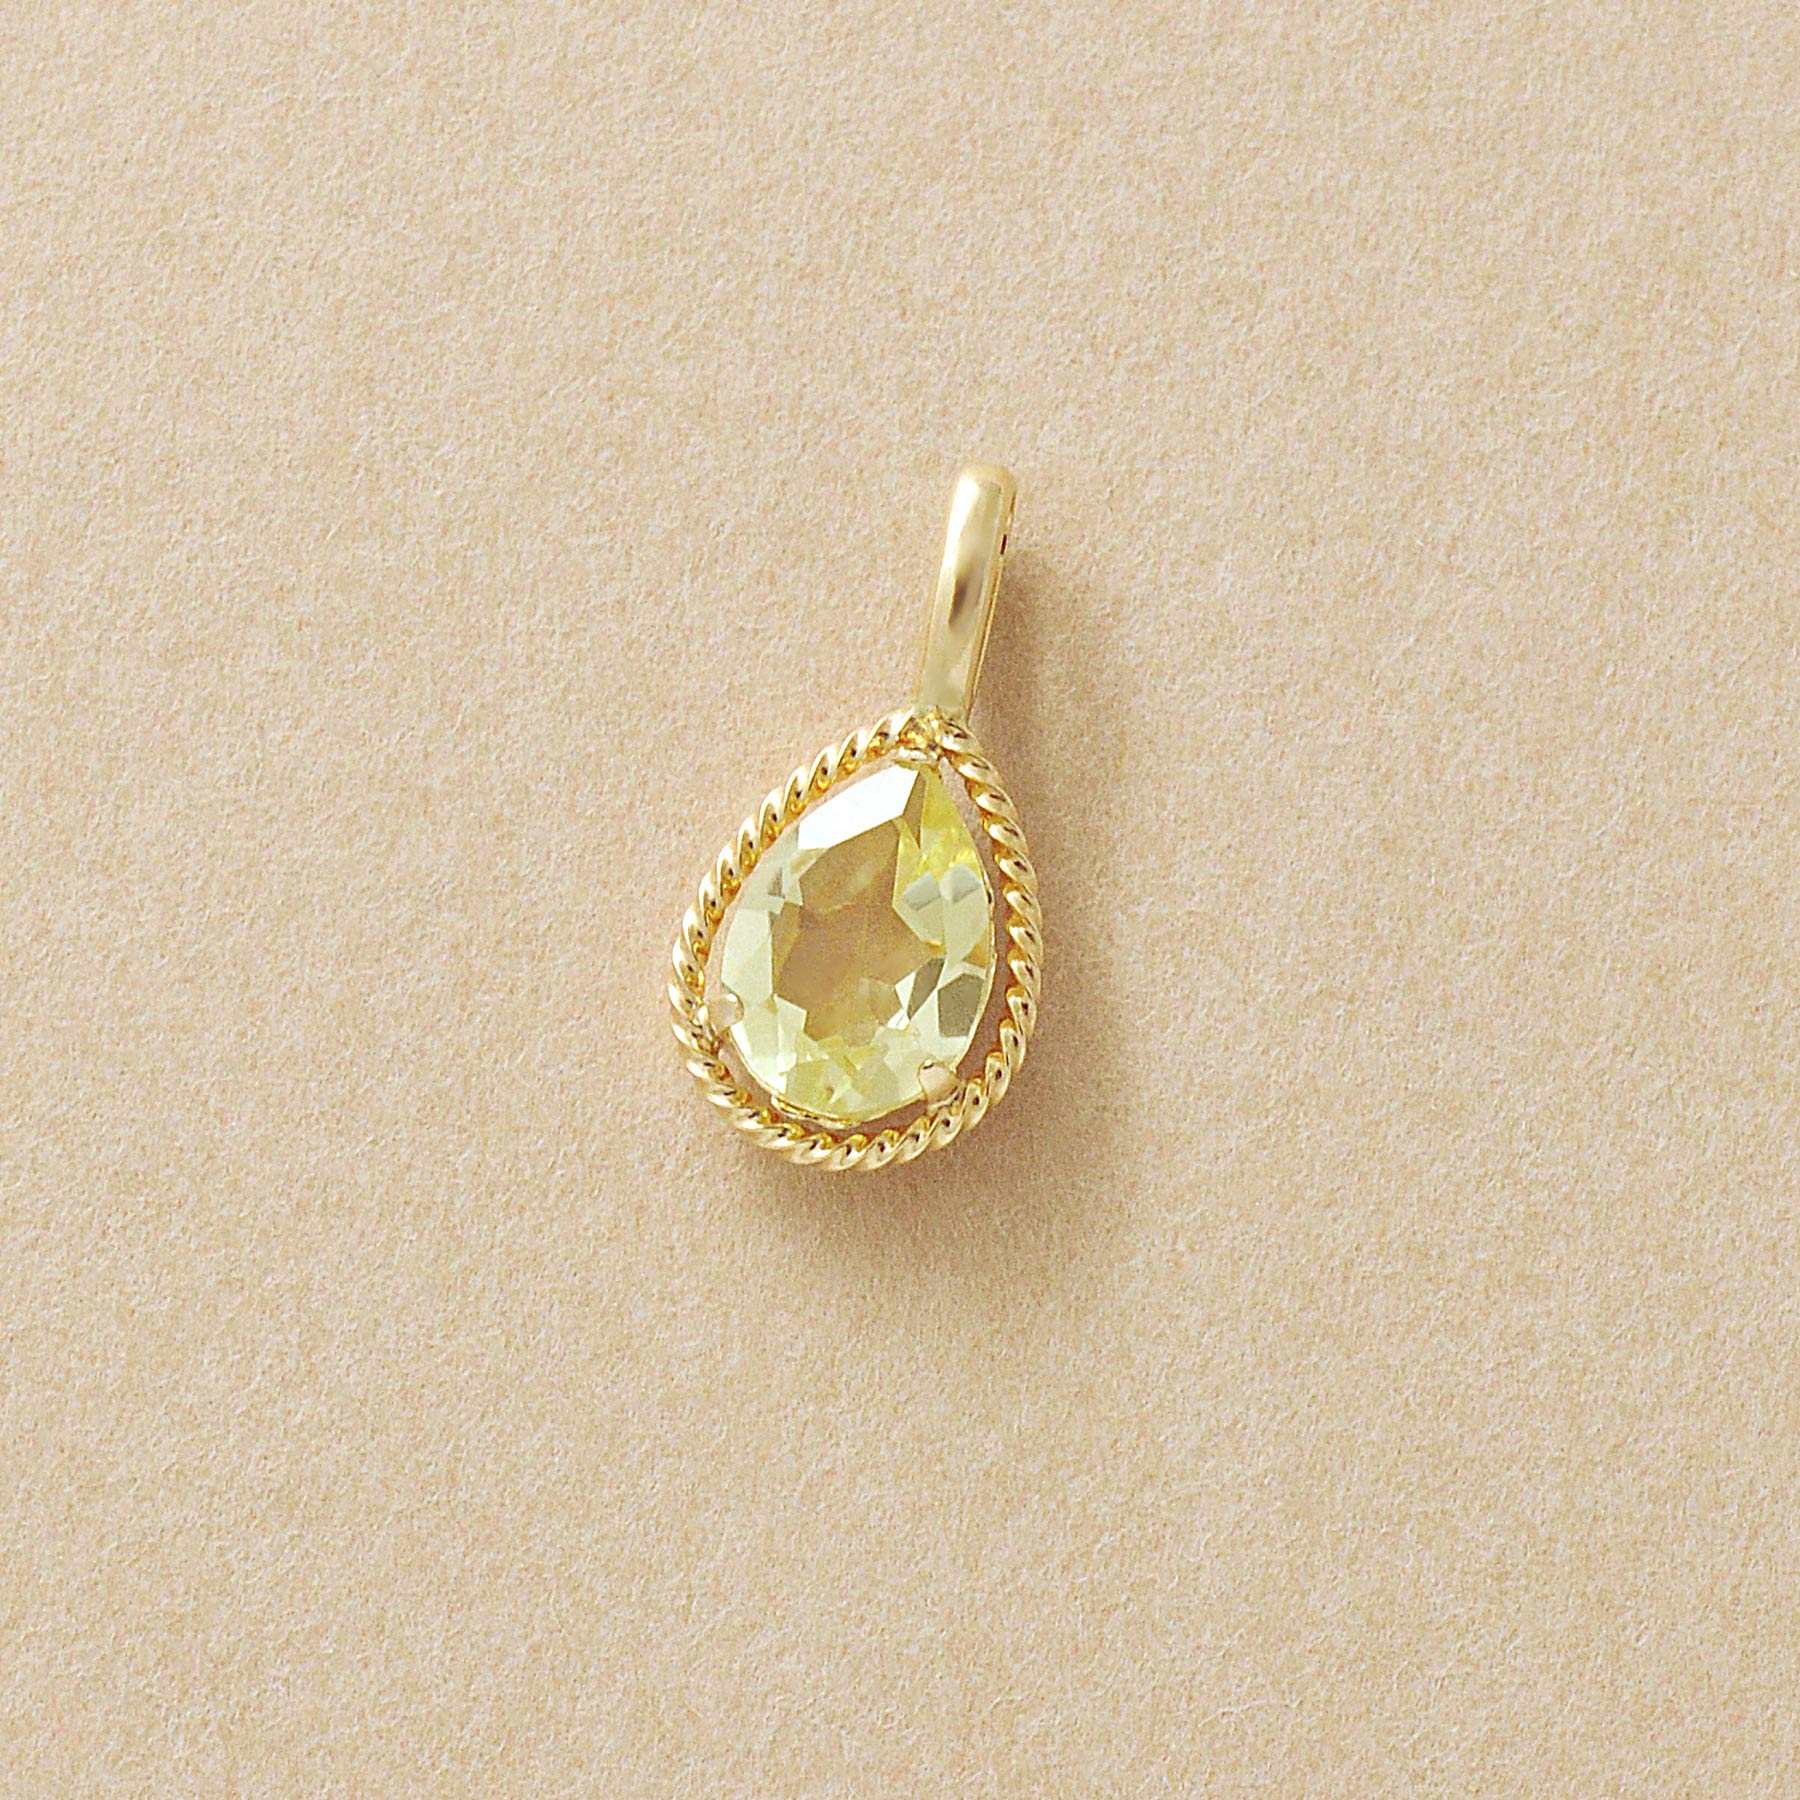 10K Lemon Quartz Drop Necklace Charm (Yellow Gold) - Product Image